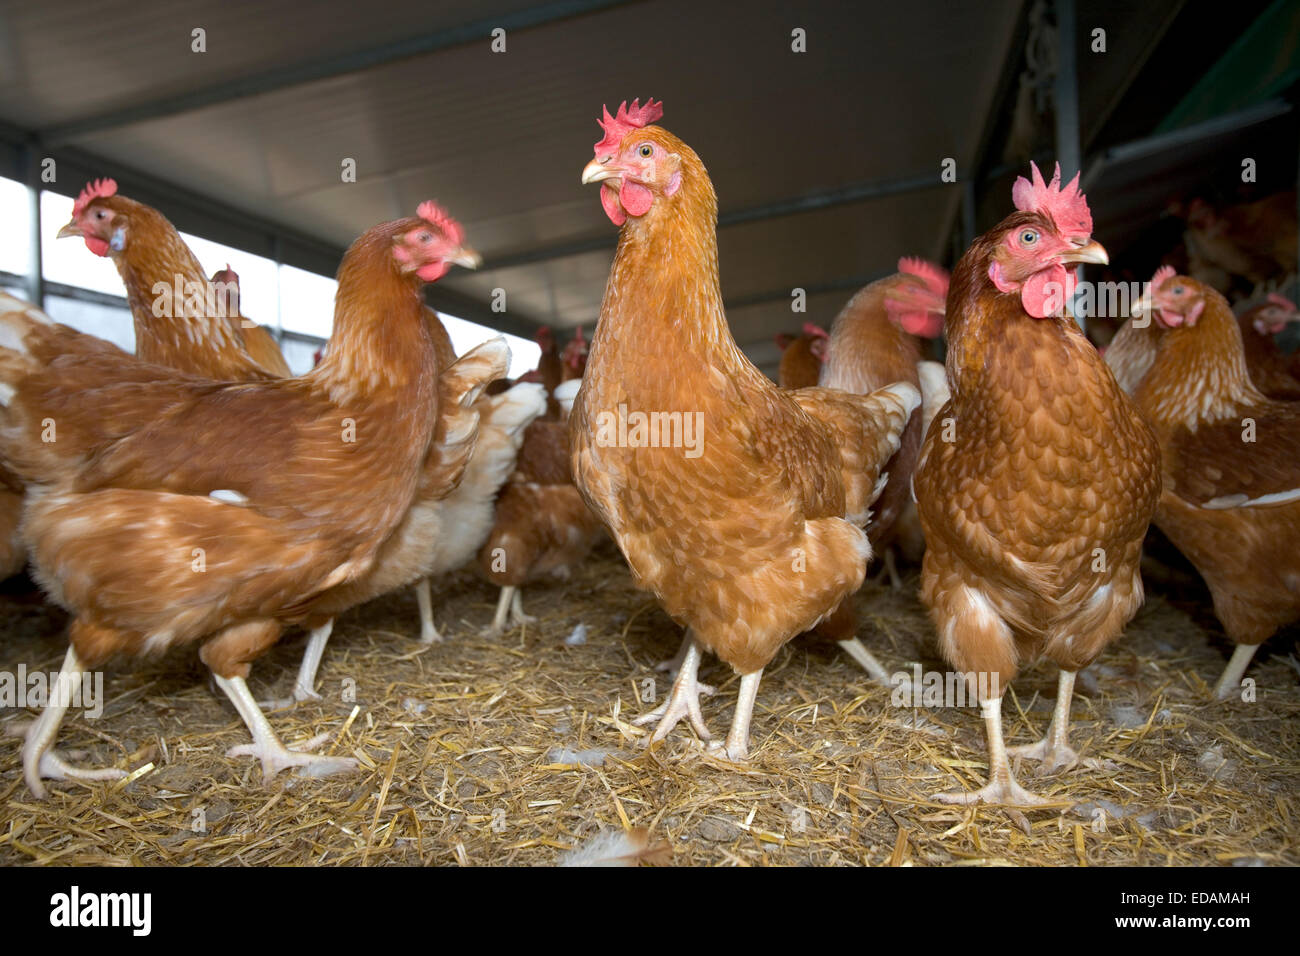 Organic free range hens Stock Photo